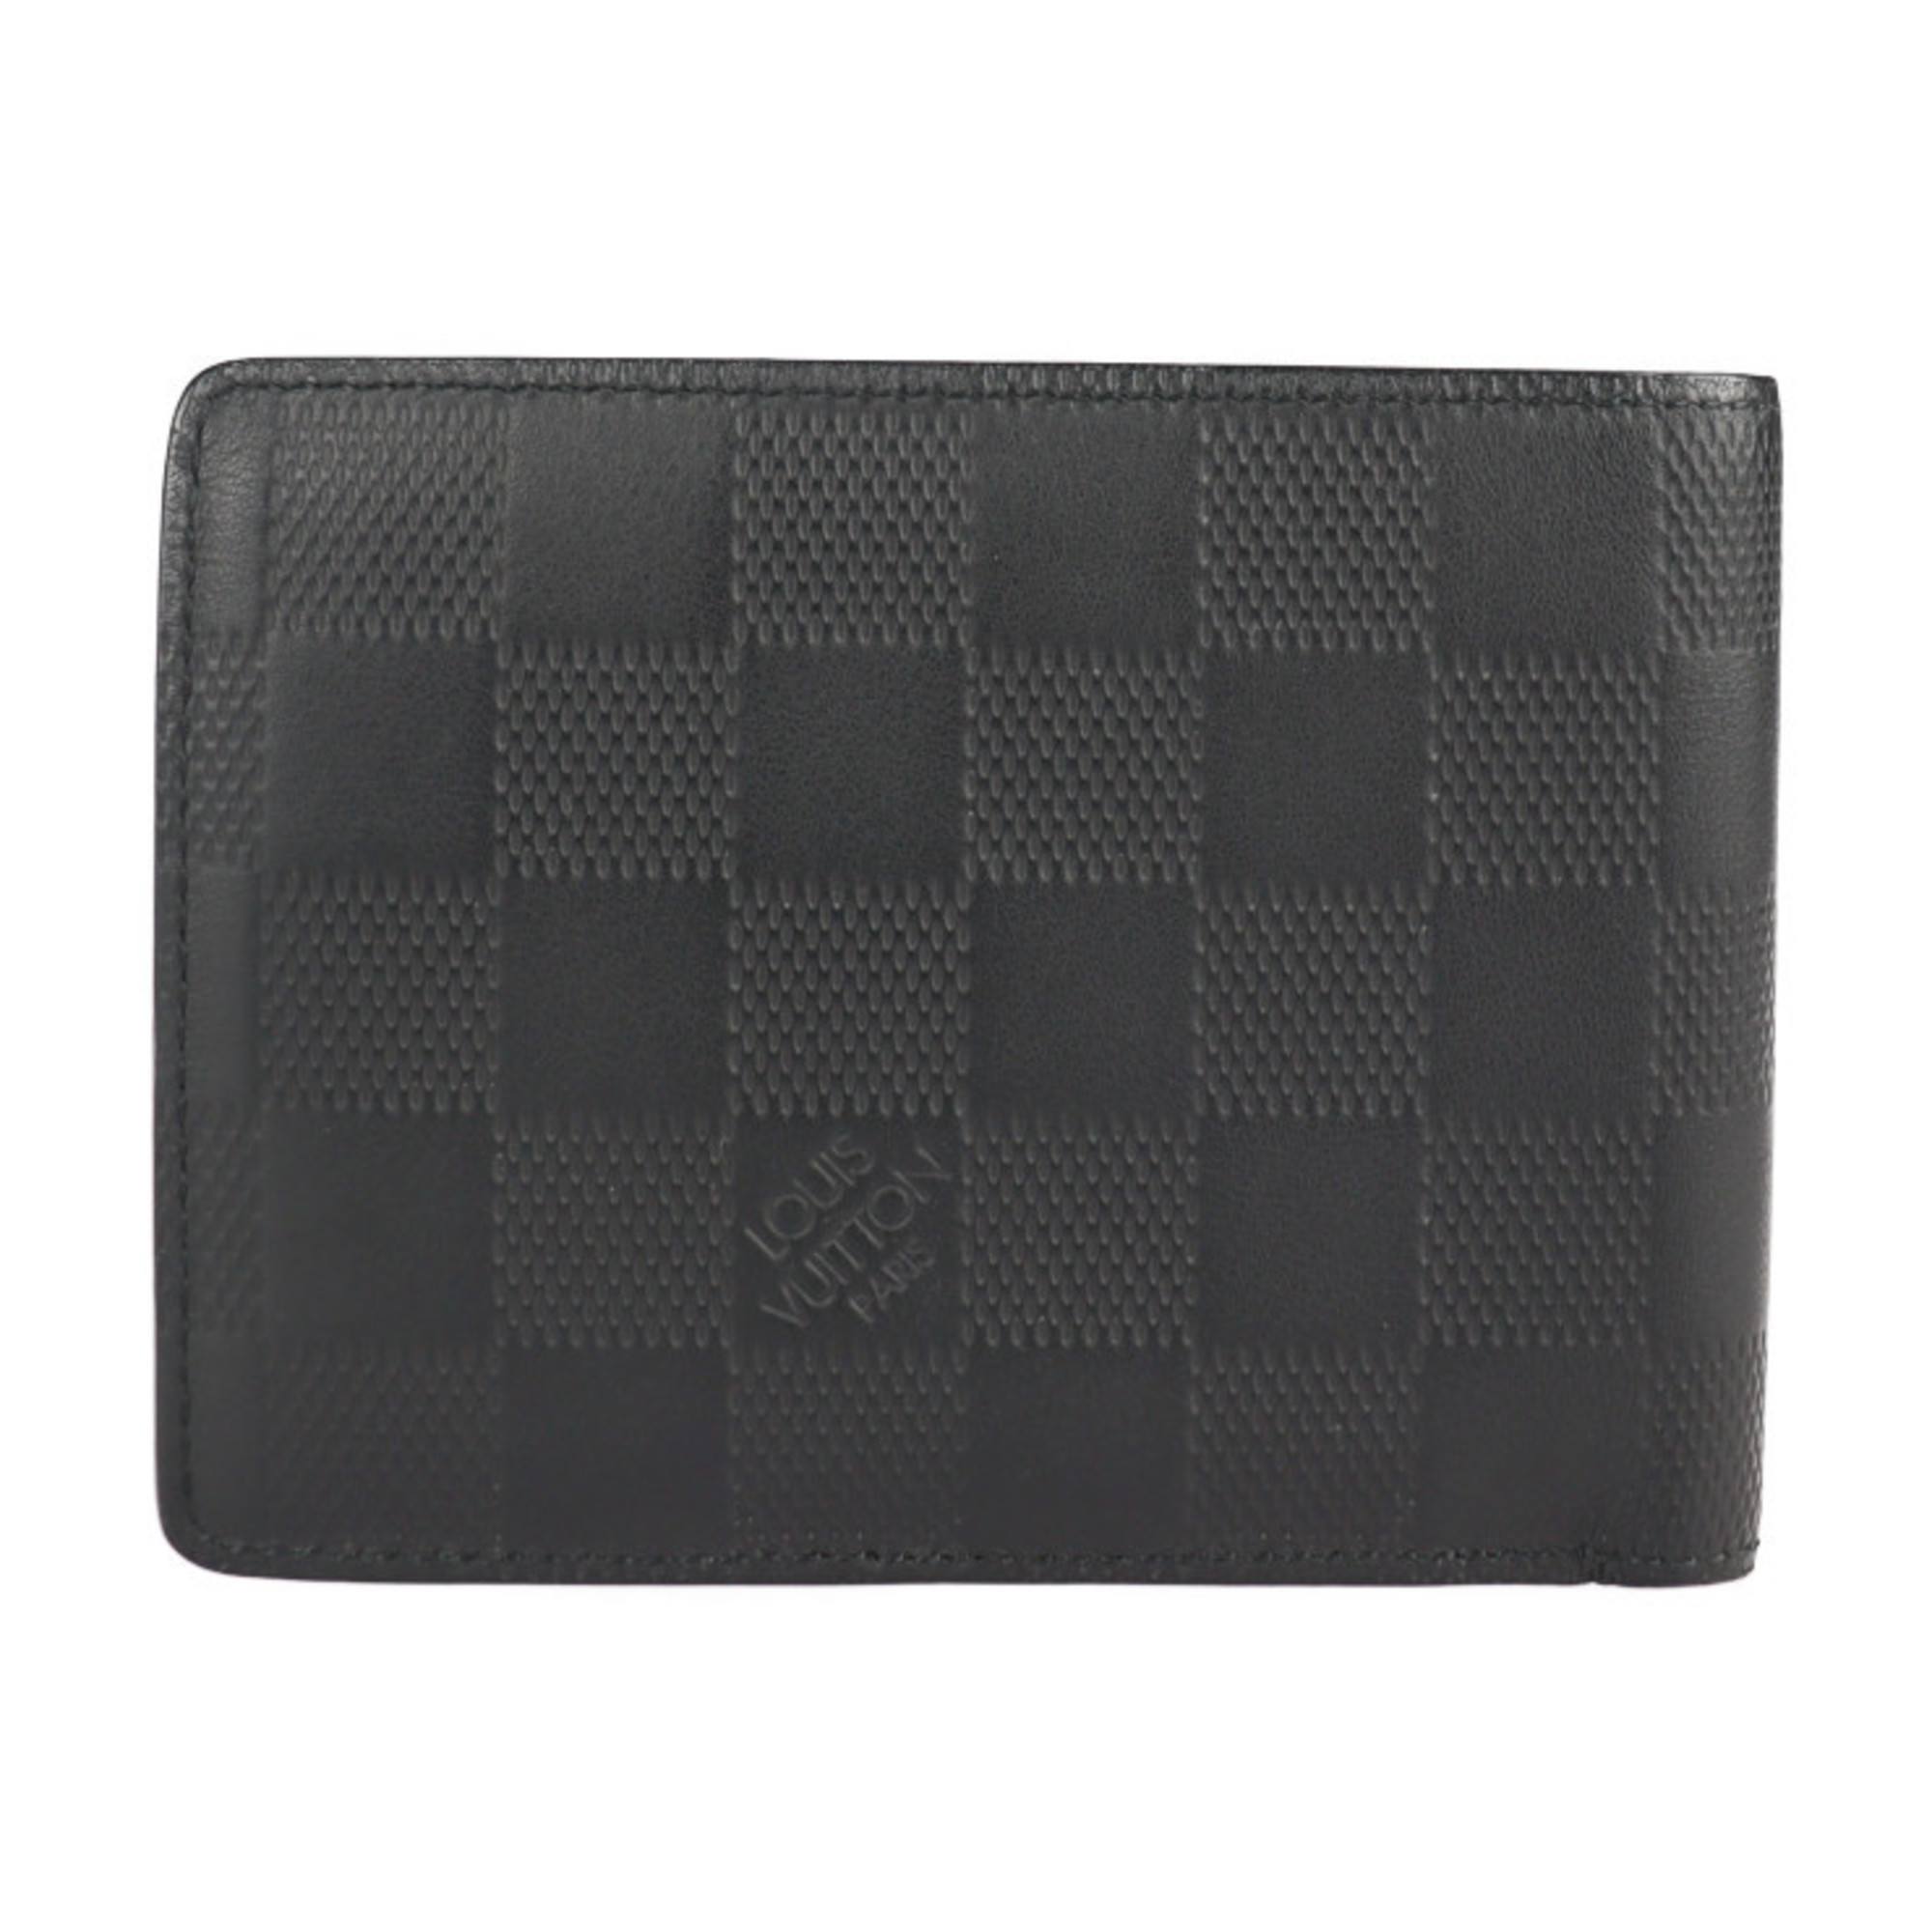 LOUIS VUITTON Louis Vuitton Portefeuille Multiple Bifold Wallet N63124 Damier Infini Leather Onyx